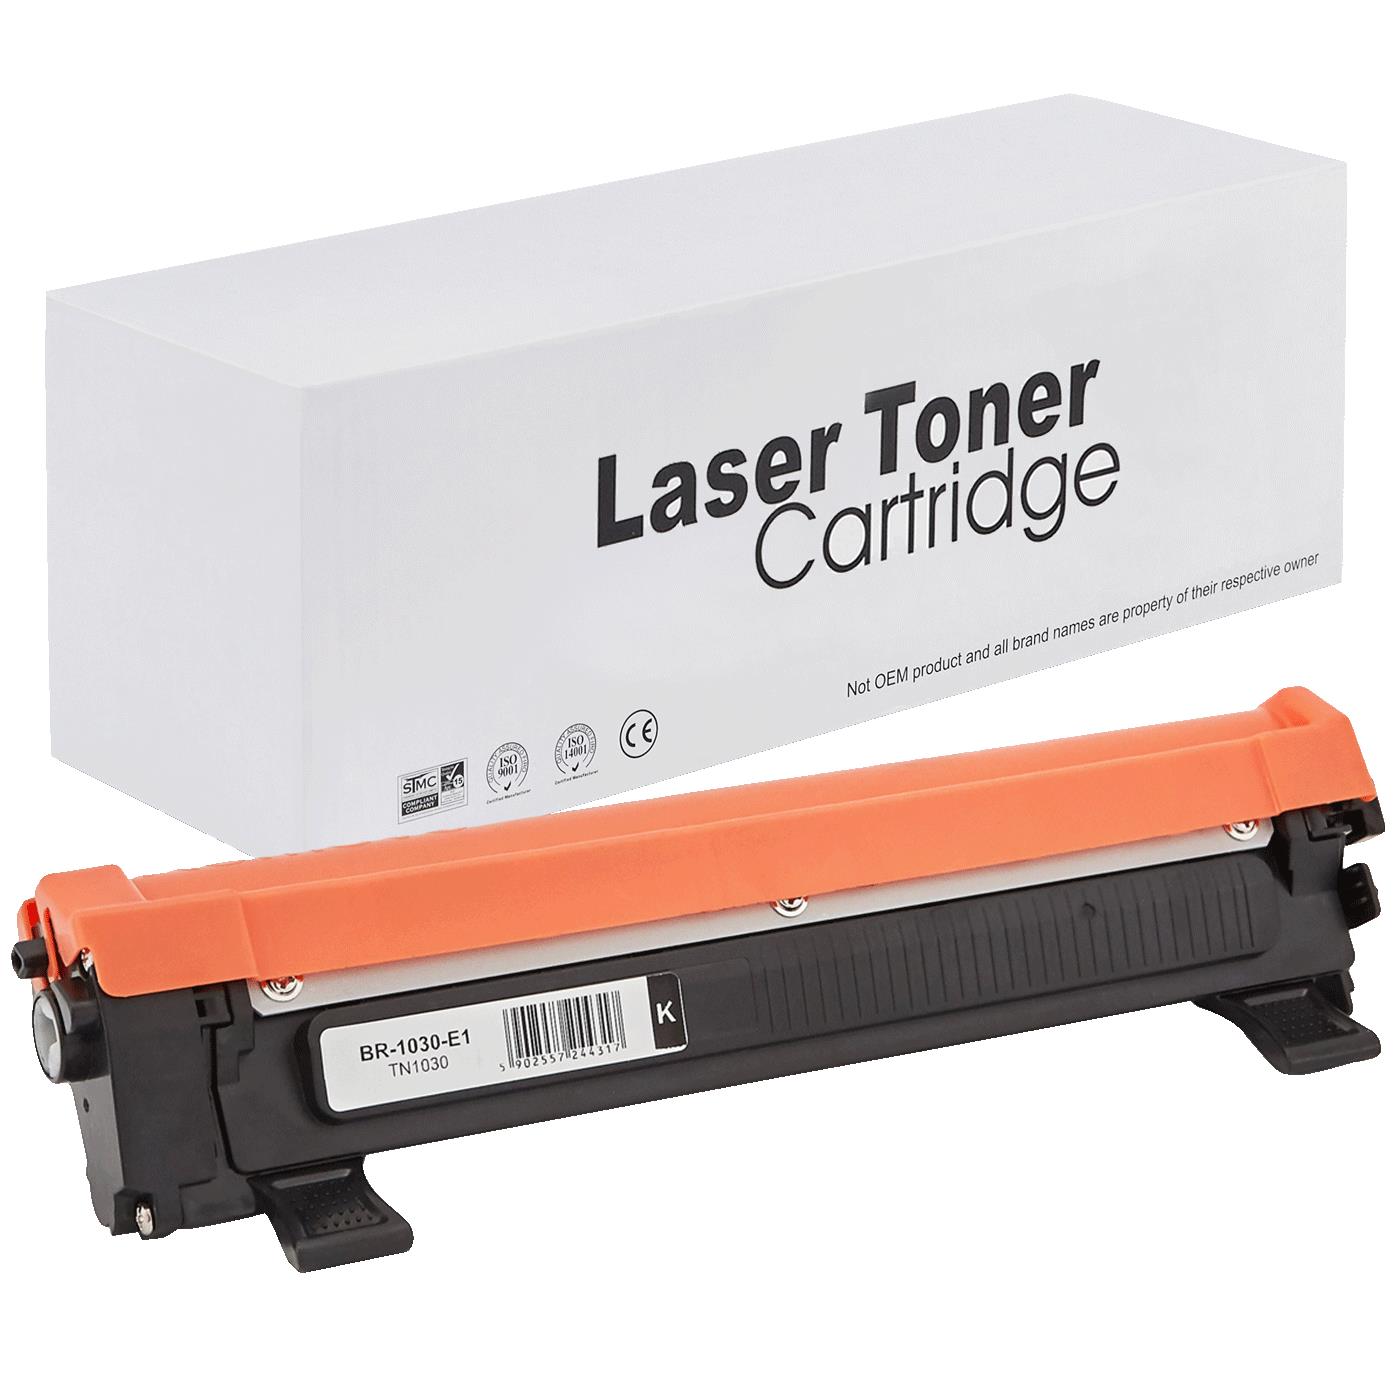 съвместима тонер касета за принтери и печатащи устройства на Brother 1111 Toner BR-1030 | TN1030 / TN1050 / TN-1030. Ниски цени, прецизно изпълнение, високо качество.